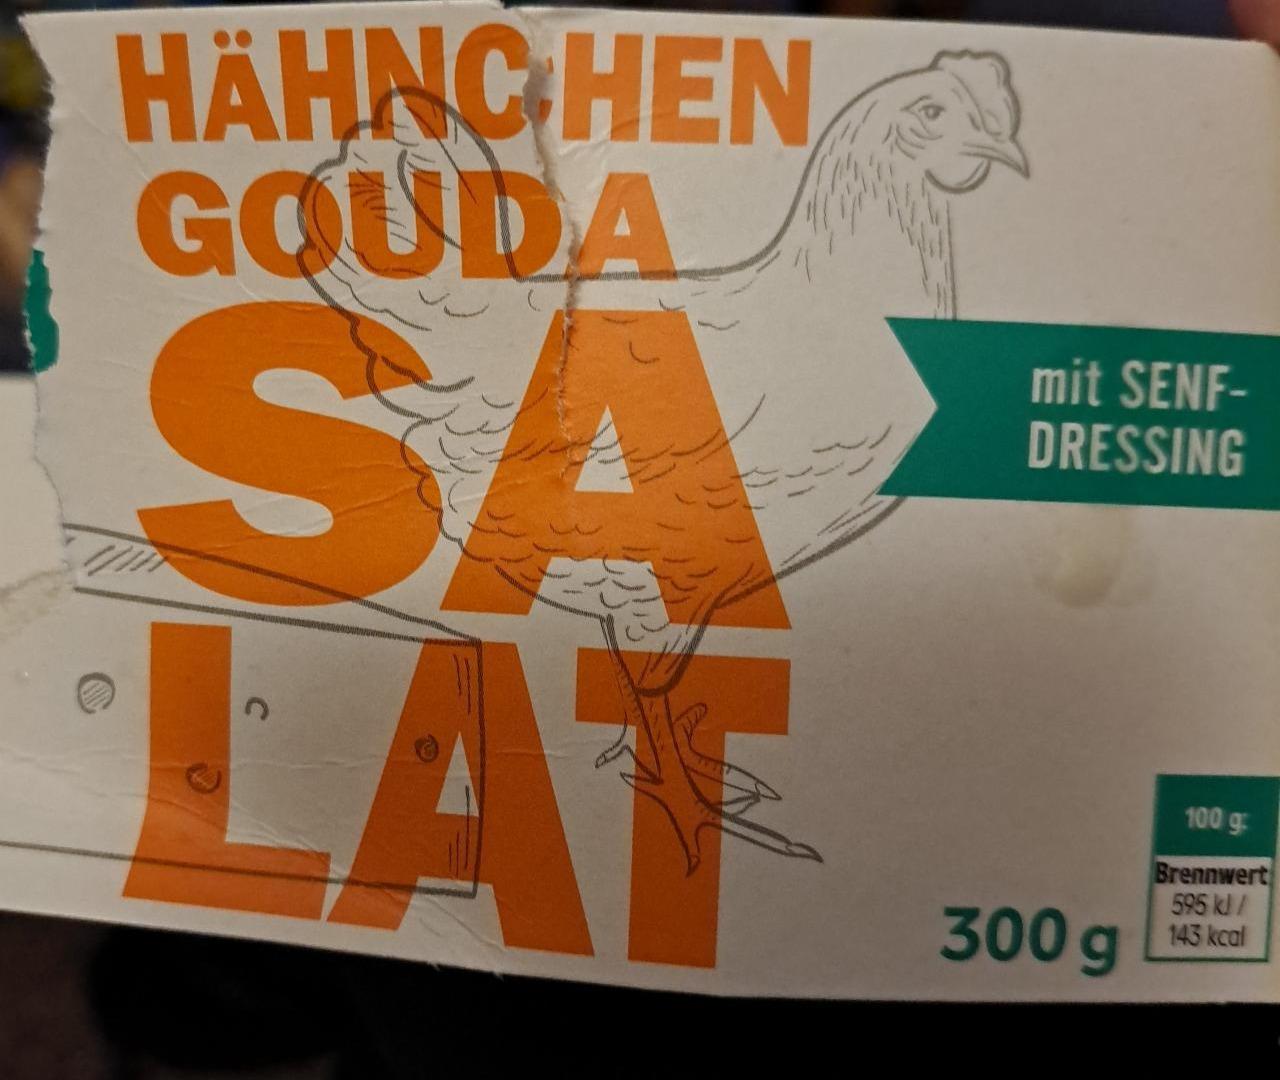 Fotografie - Hähnchen-Gouda Salat mit Senf-Dressing K-to go